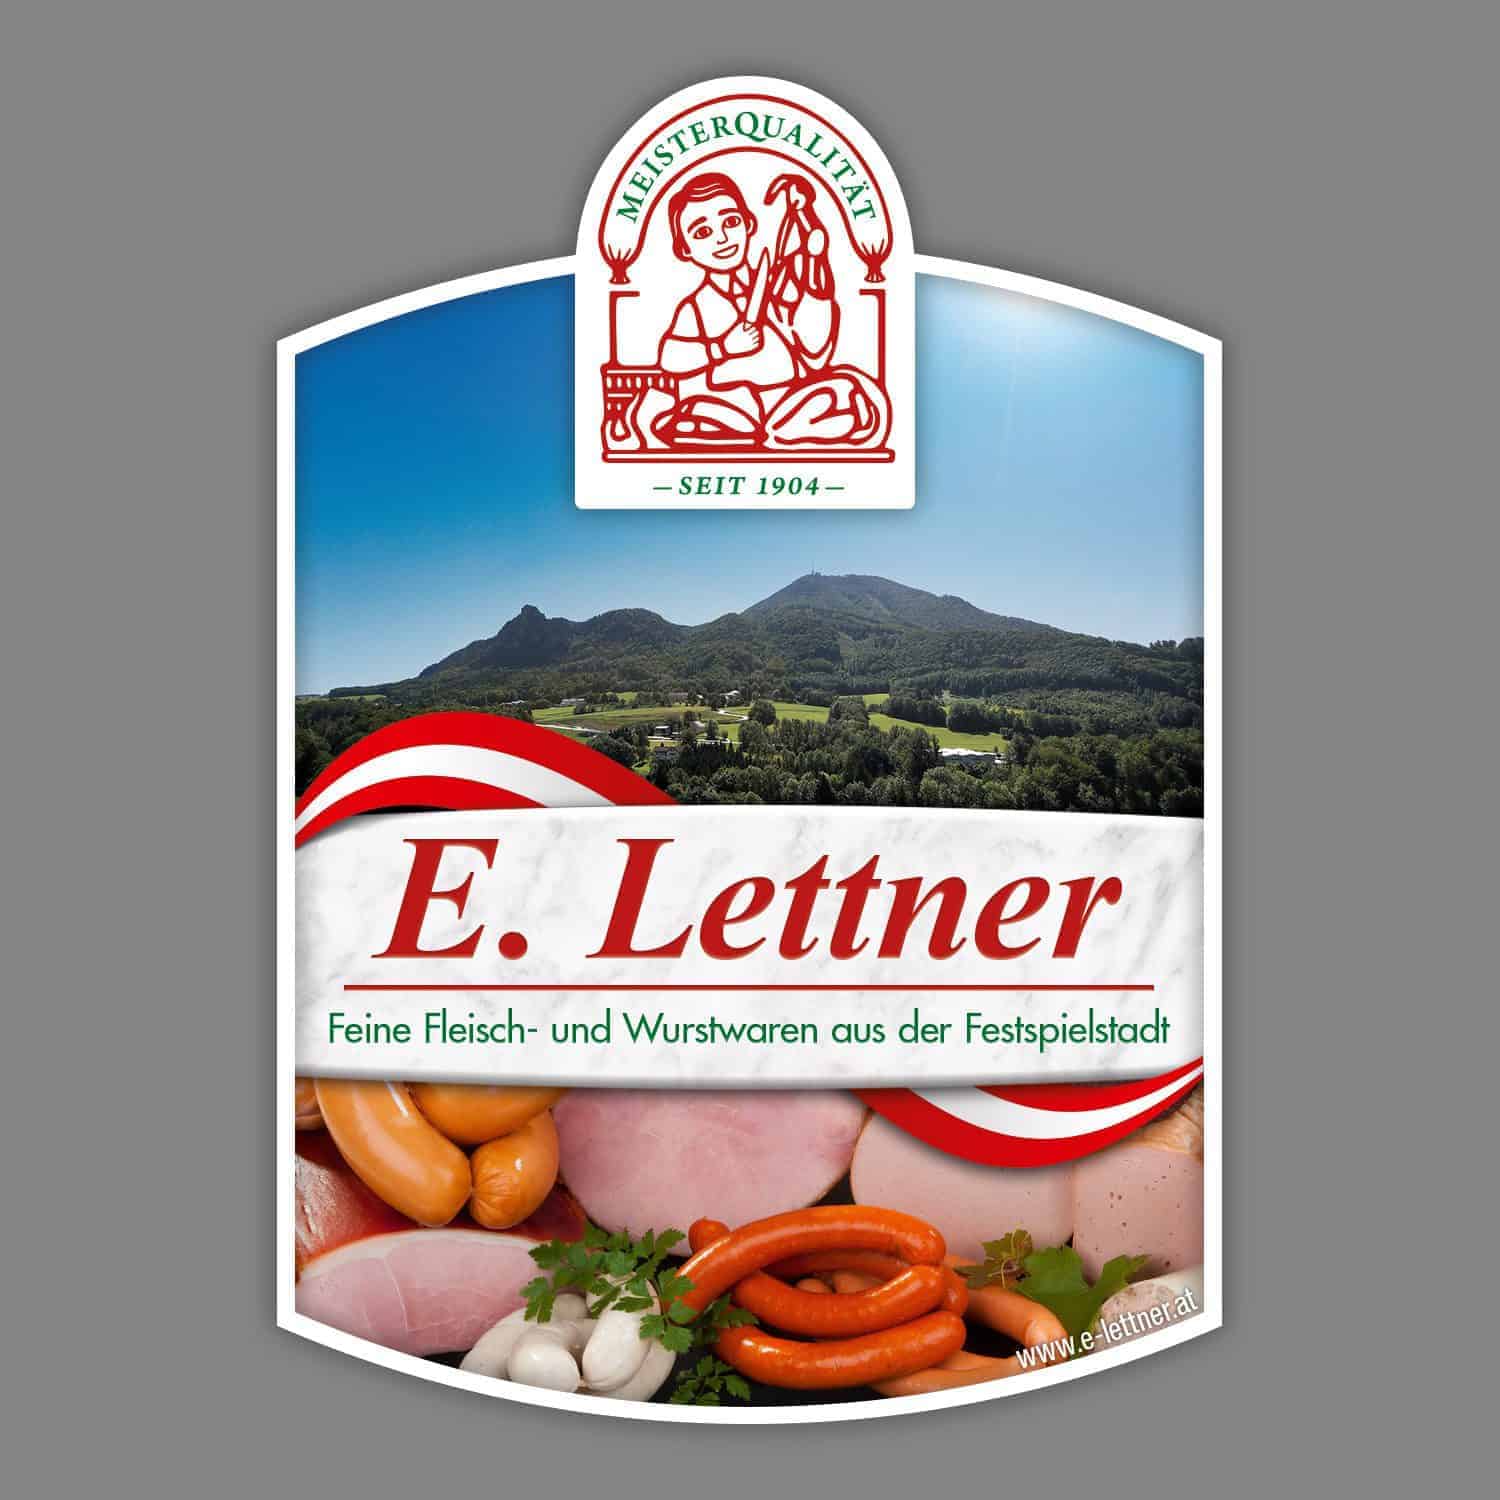 Metzgerei Lettner - Engelbert Lettner bei Salzburg schmeckt